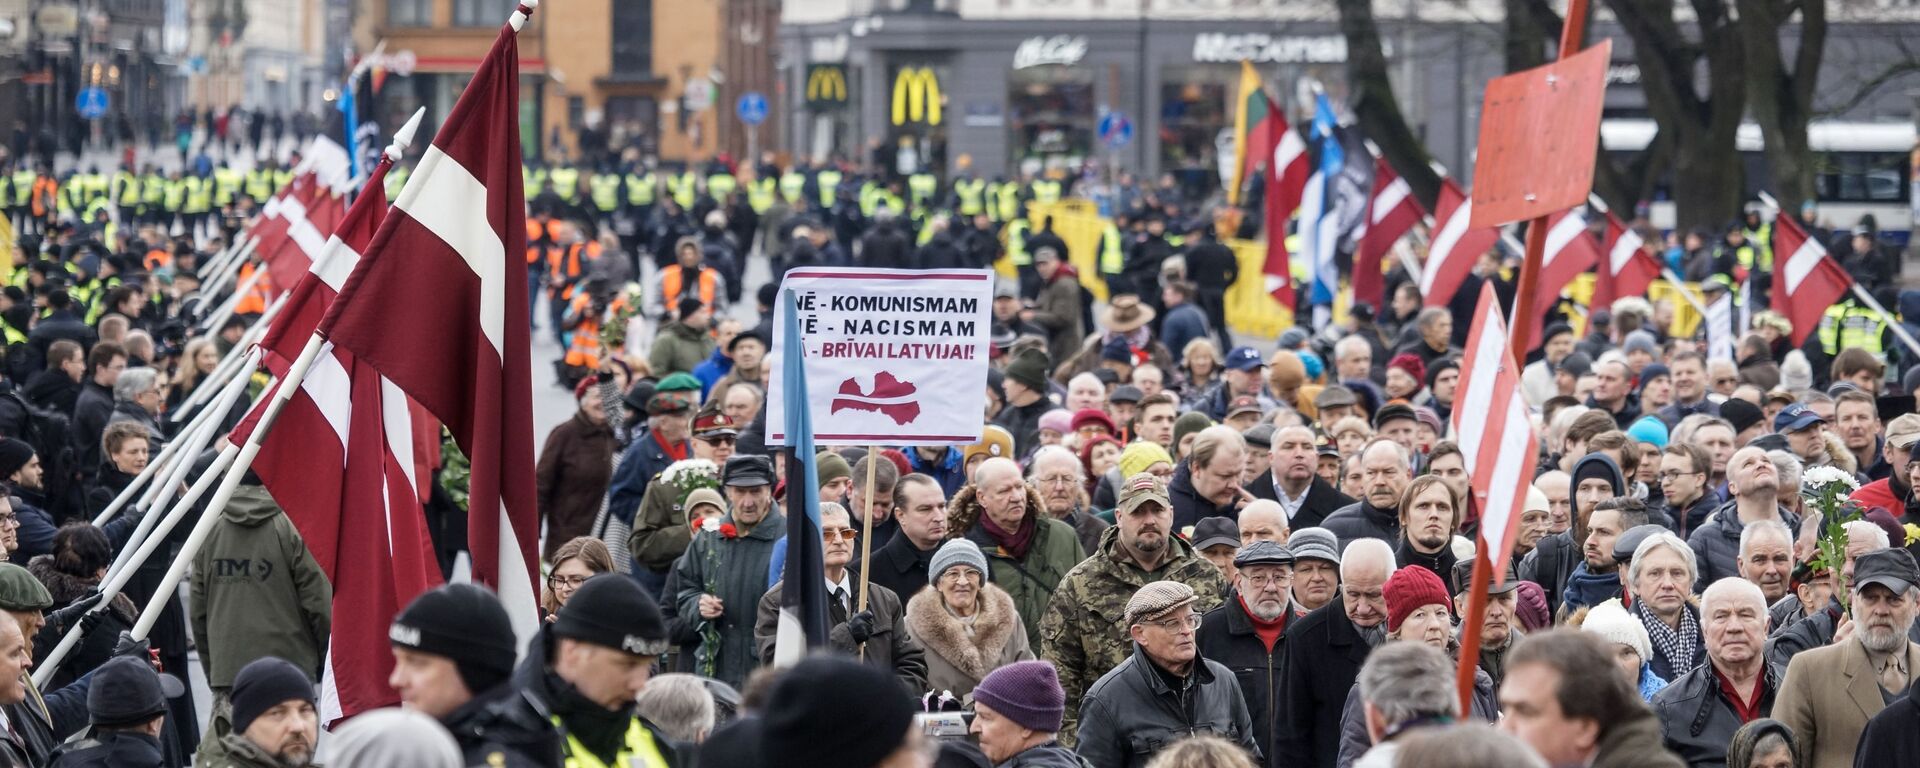 Шествие легионеров в Риге 16 марта 2019 - Sputnik Latvija, 1920, 13.09.2021